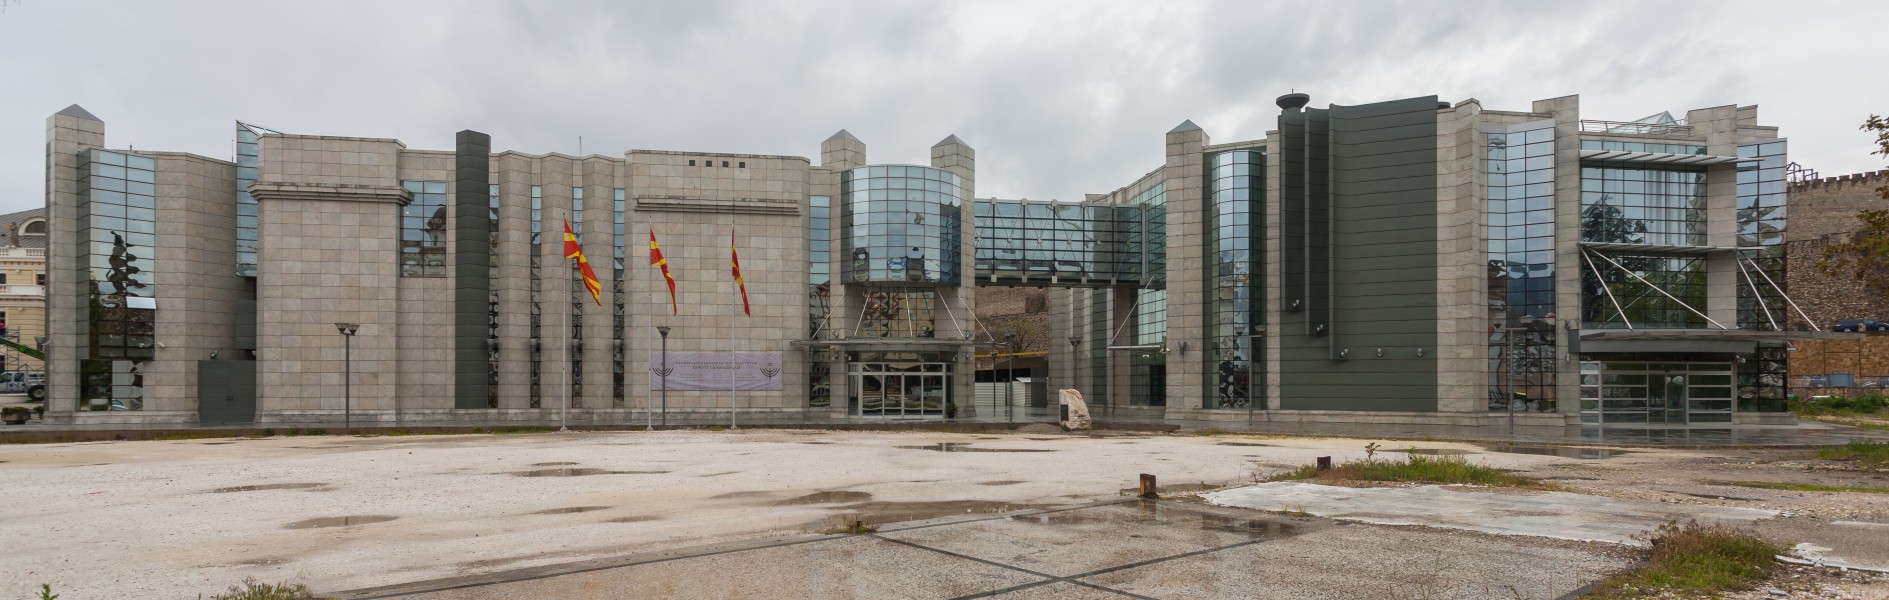 Memorial del Holocausto, Skopie, Macedonia, 2014-04-16, DD 38